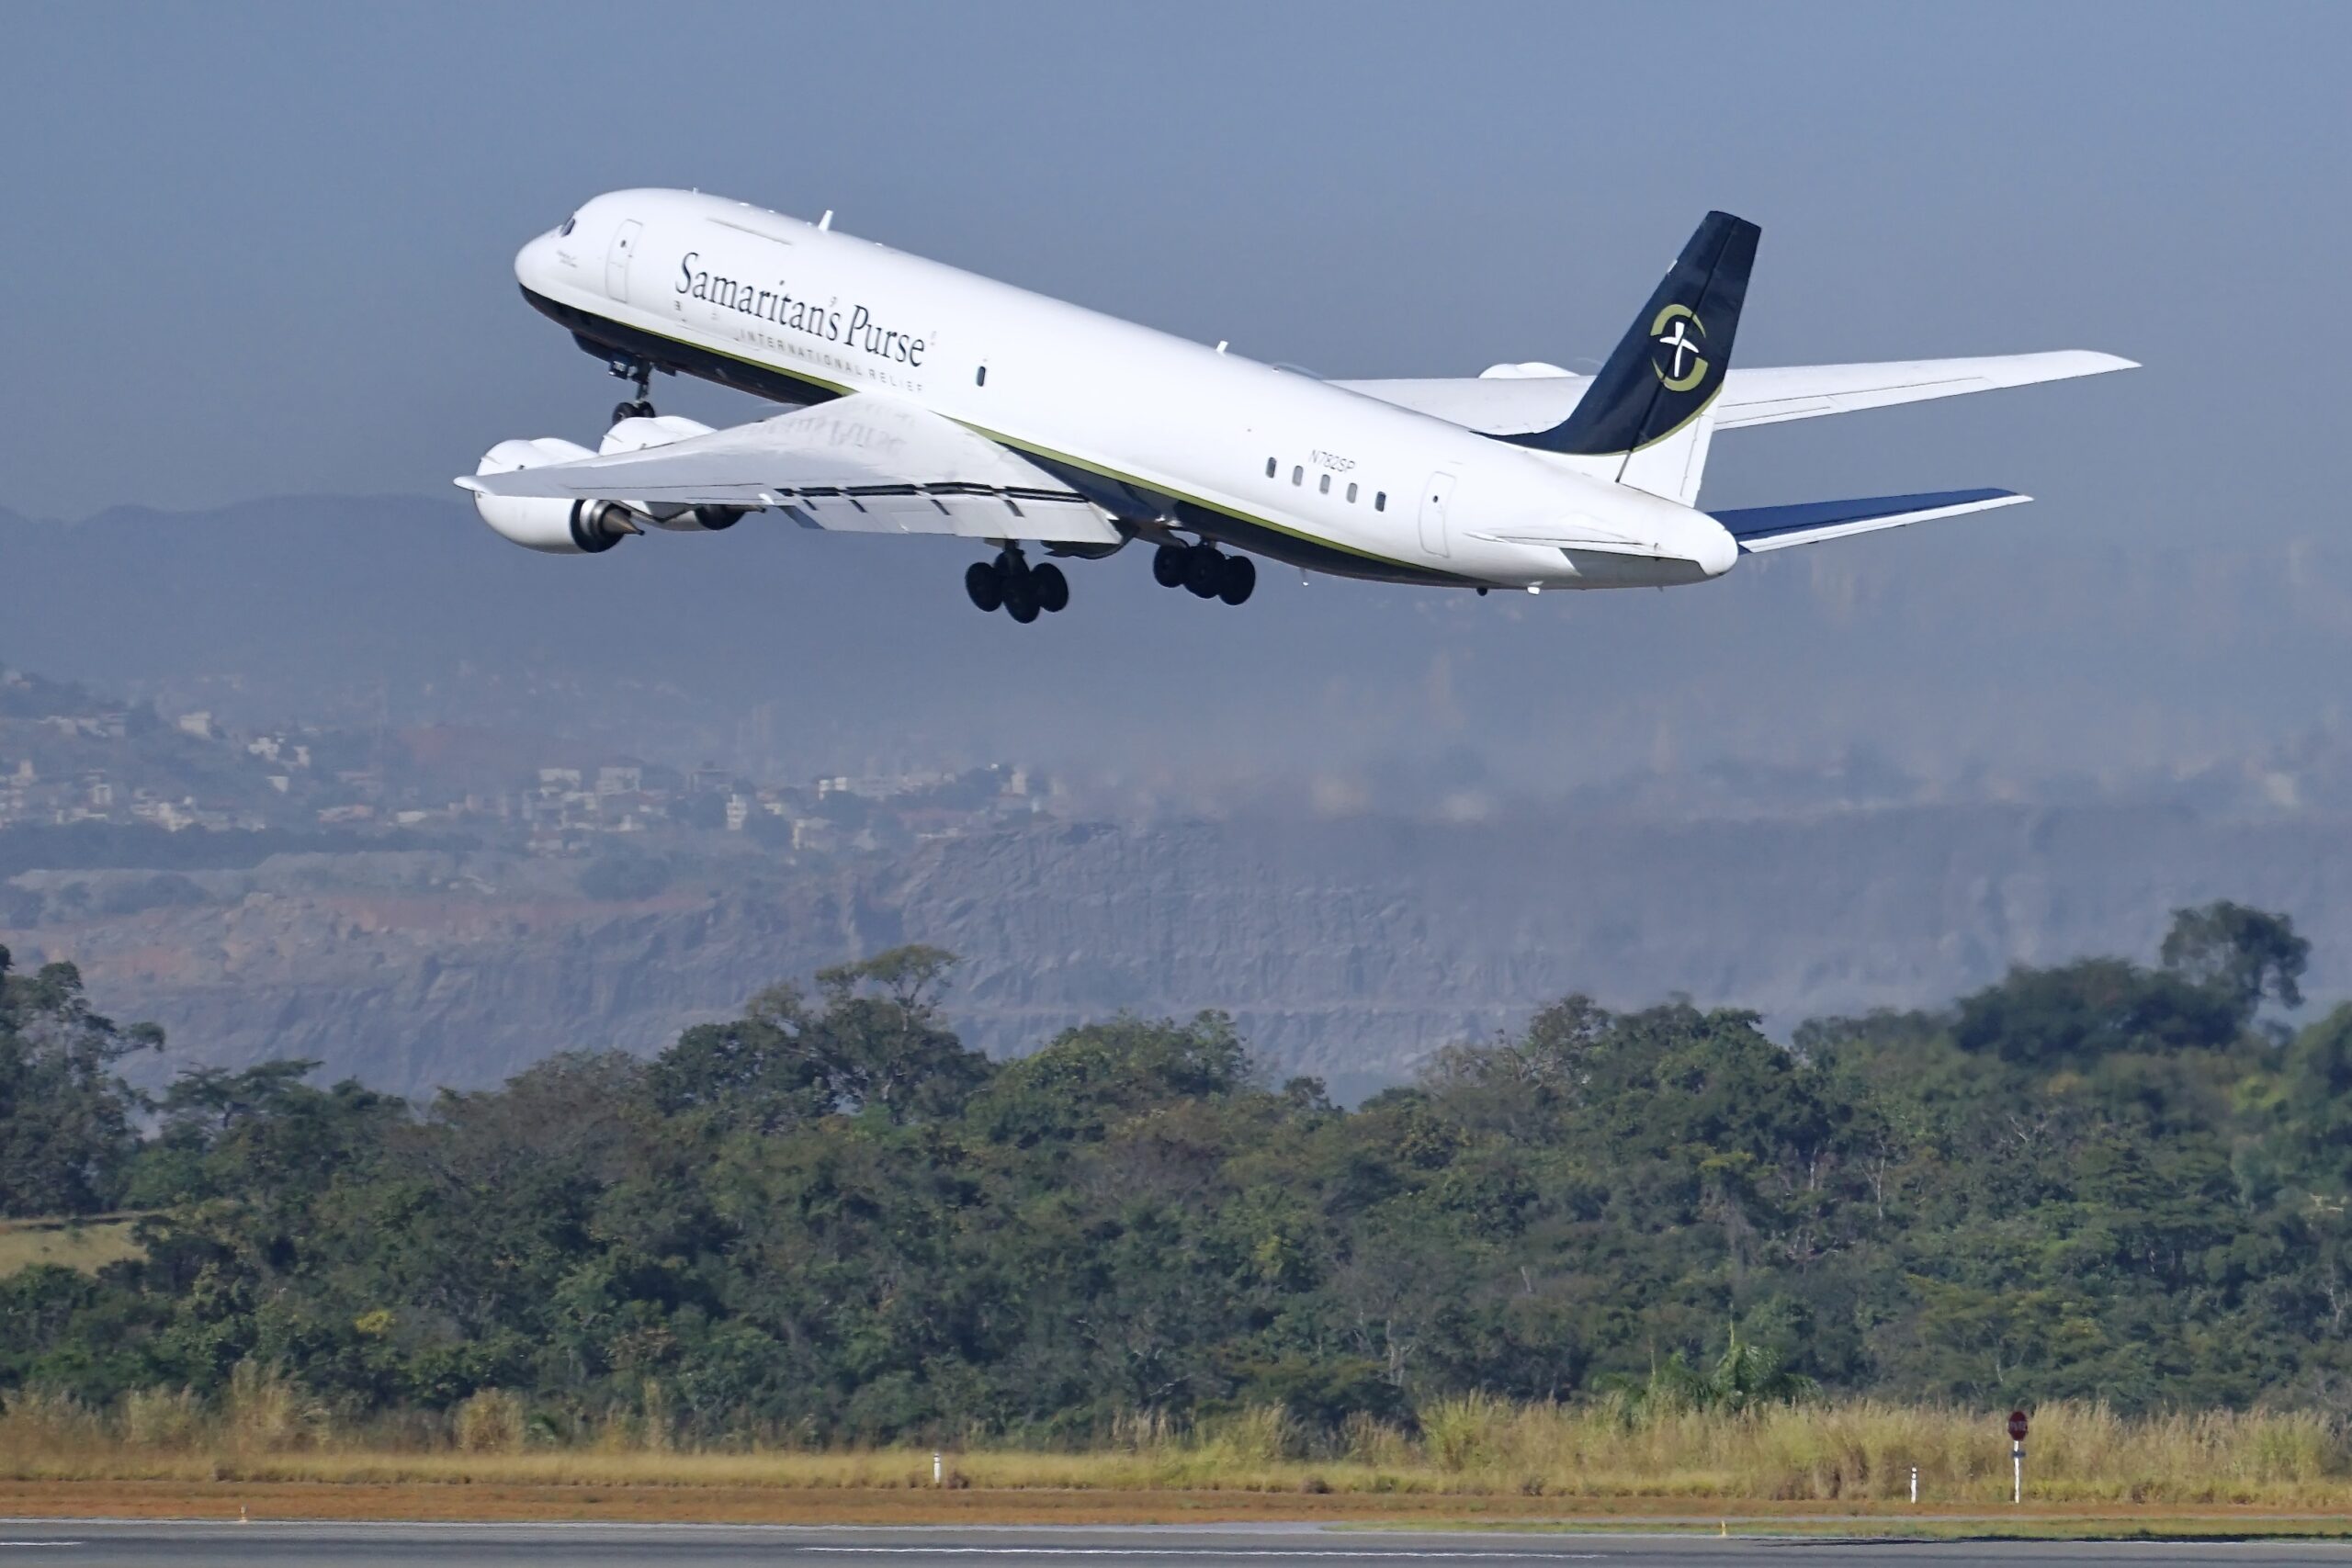 Único no mundo: conheça mais detalhes do DC-8 que veio ao Brasil na última semana